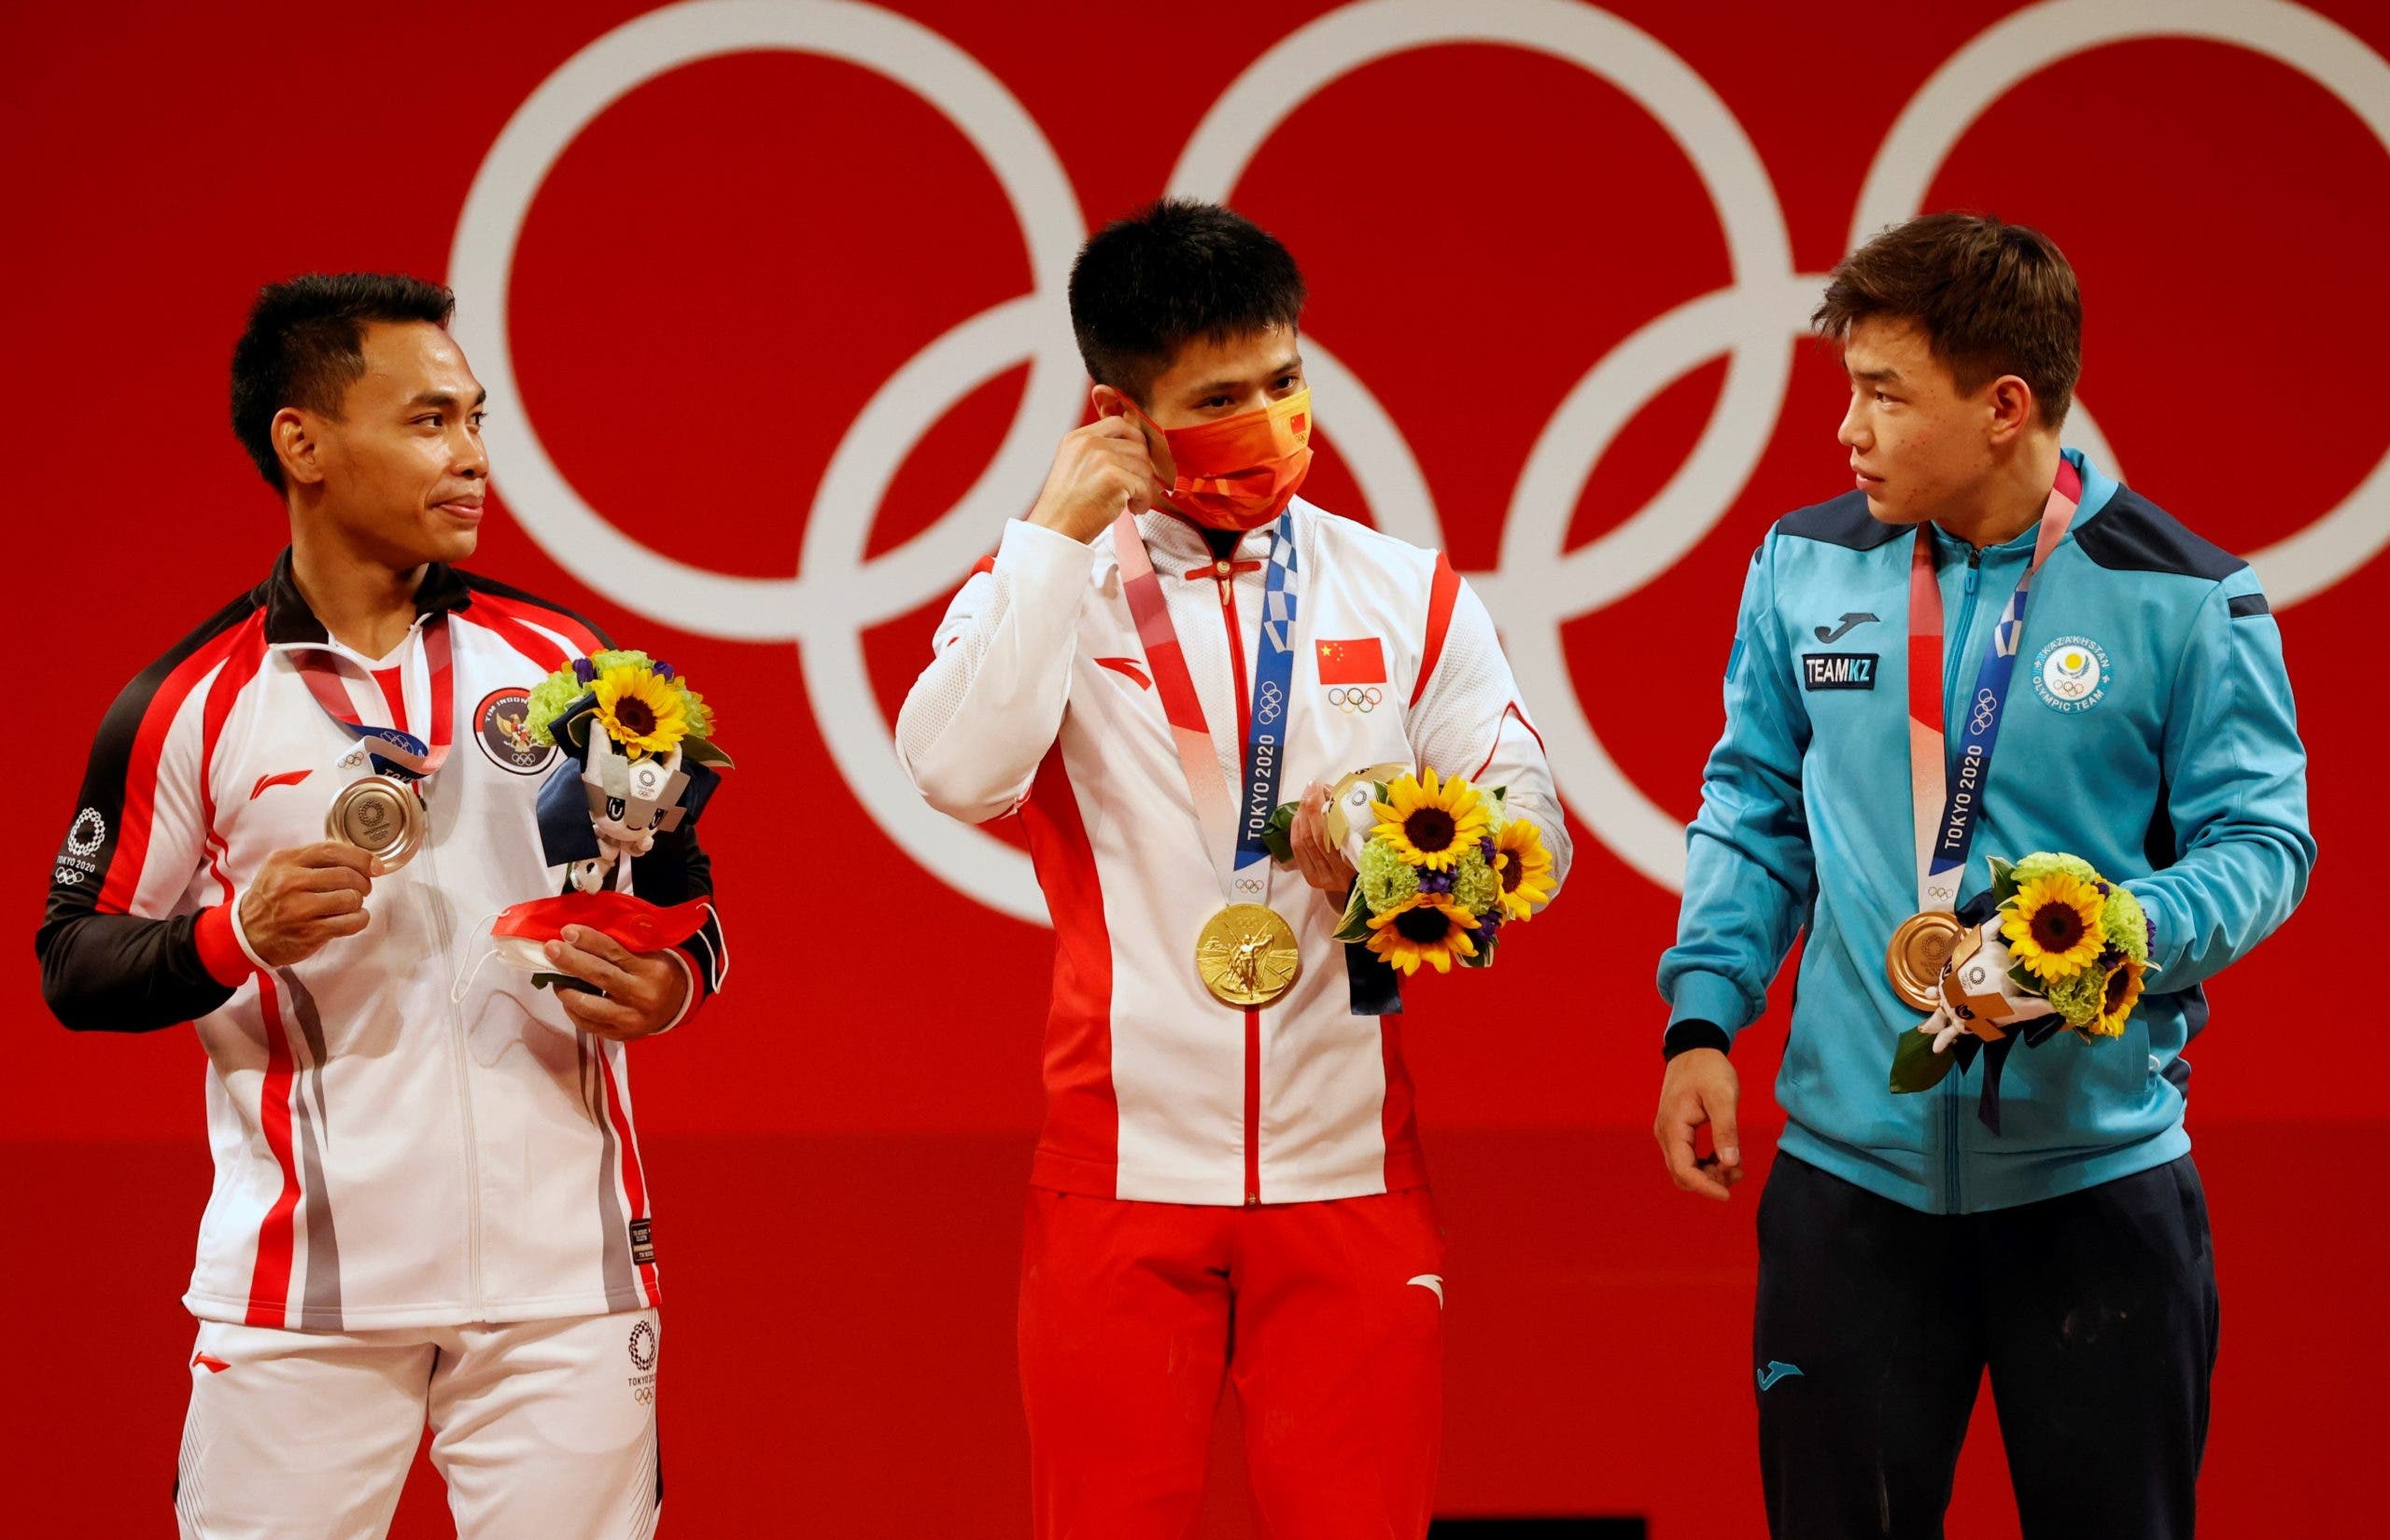 Medallistas olímpicos podrán posar sin mascarilla en podio